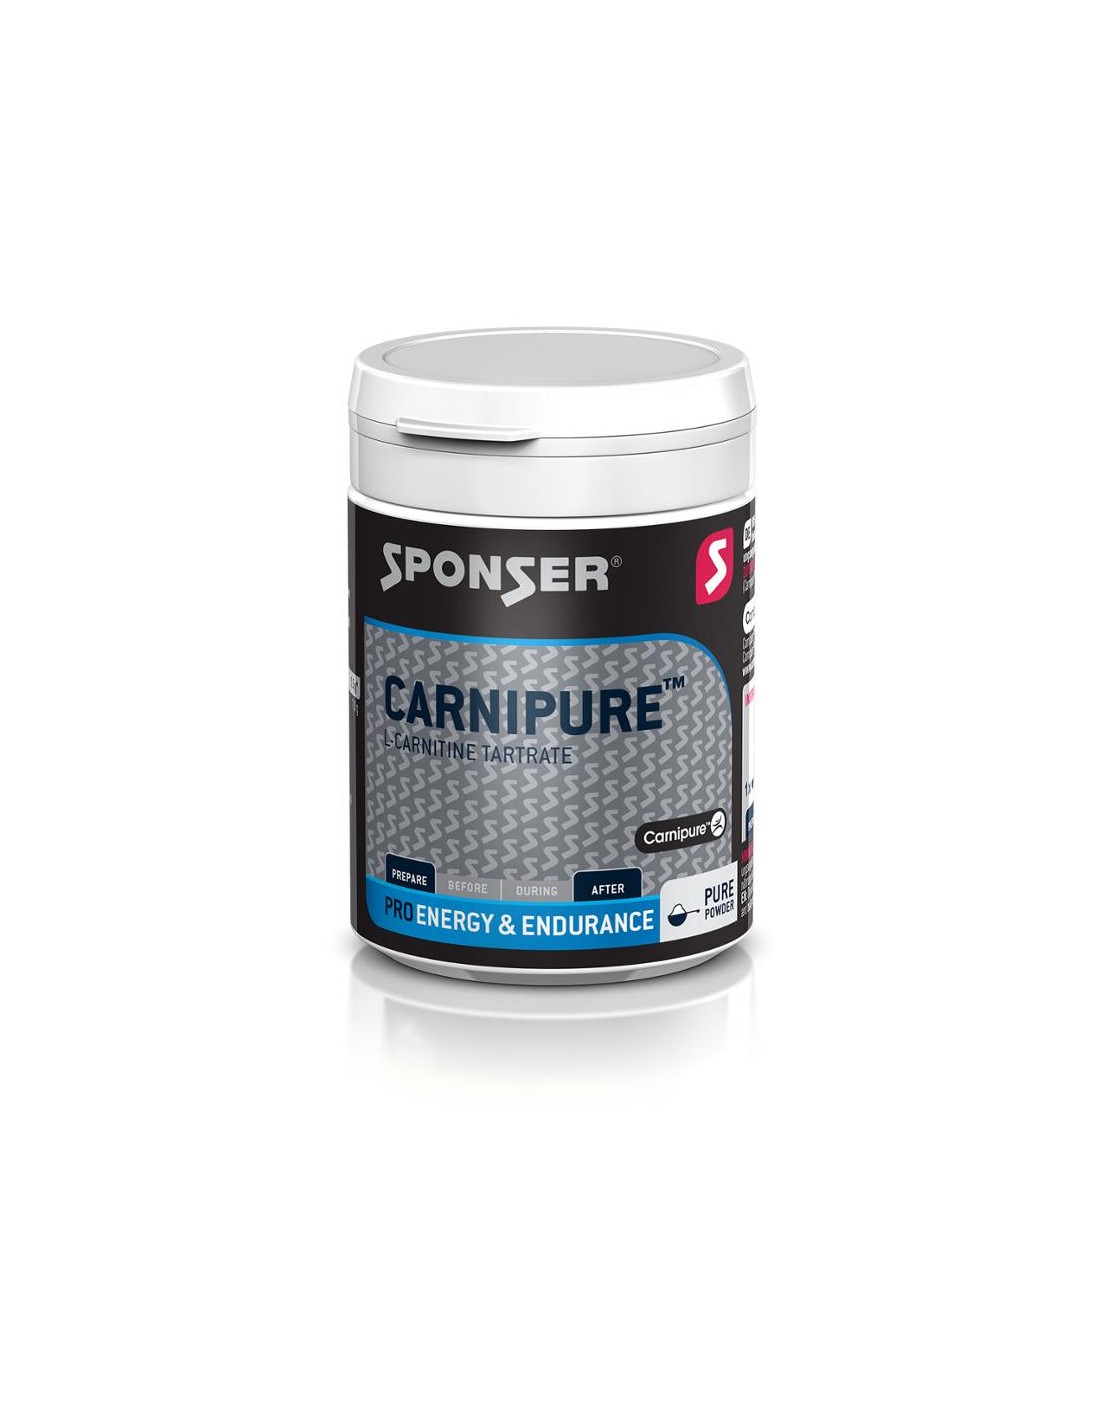 Sponser Carnipure 100% Neutral, 150 g Dose, Pulver Konsistenz - Pulver, Geschmack - Neutral, Einnahmeempfehlung - vor/nach Training, von Sponser